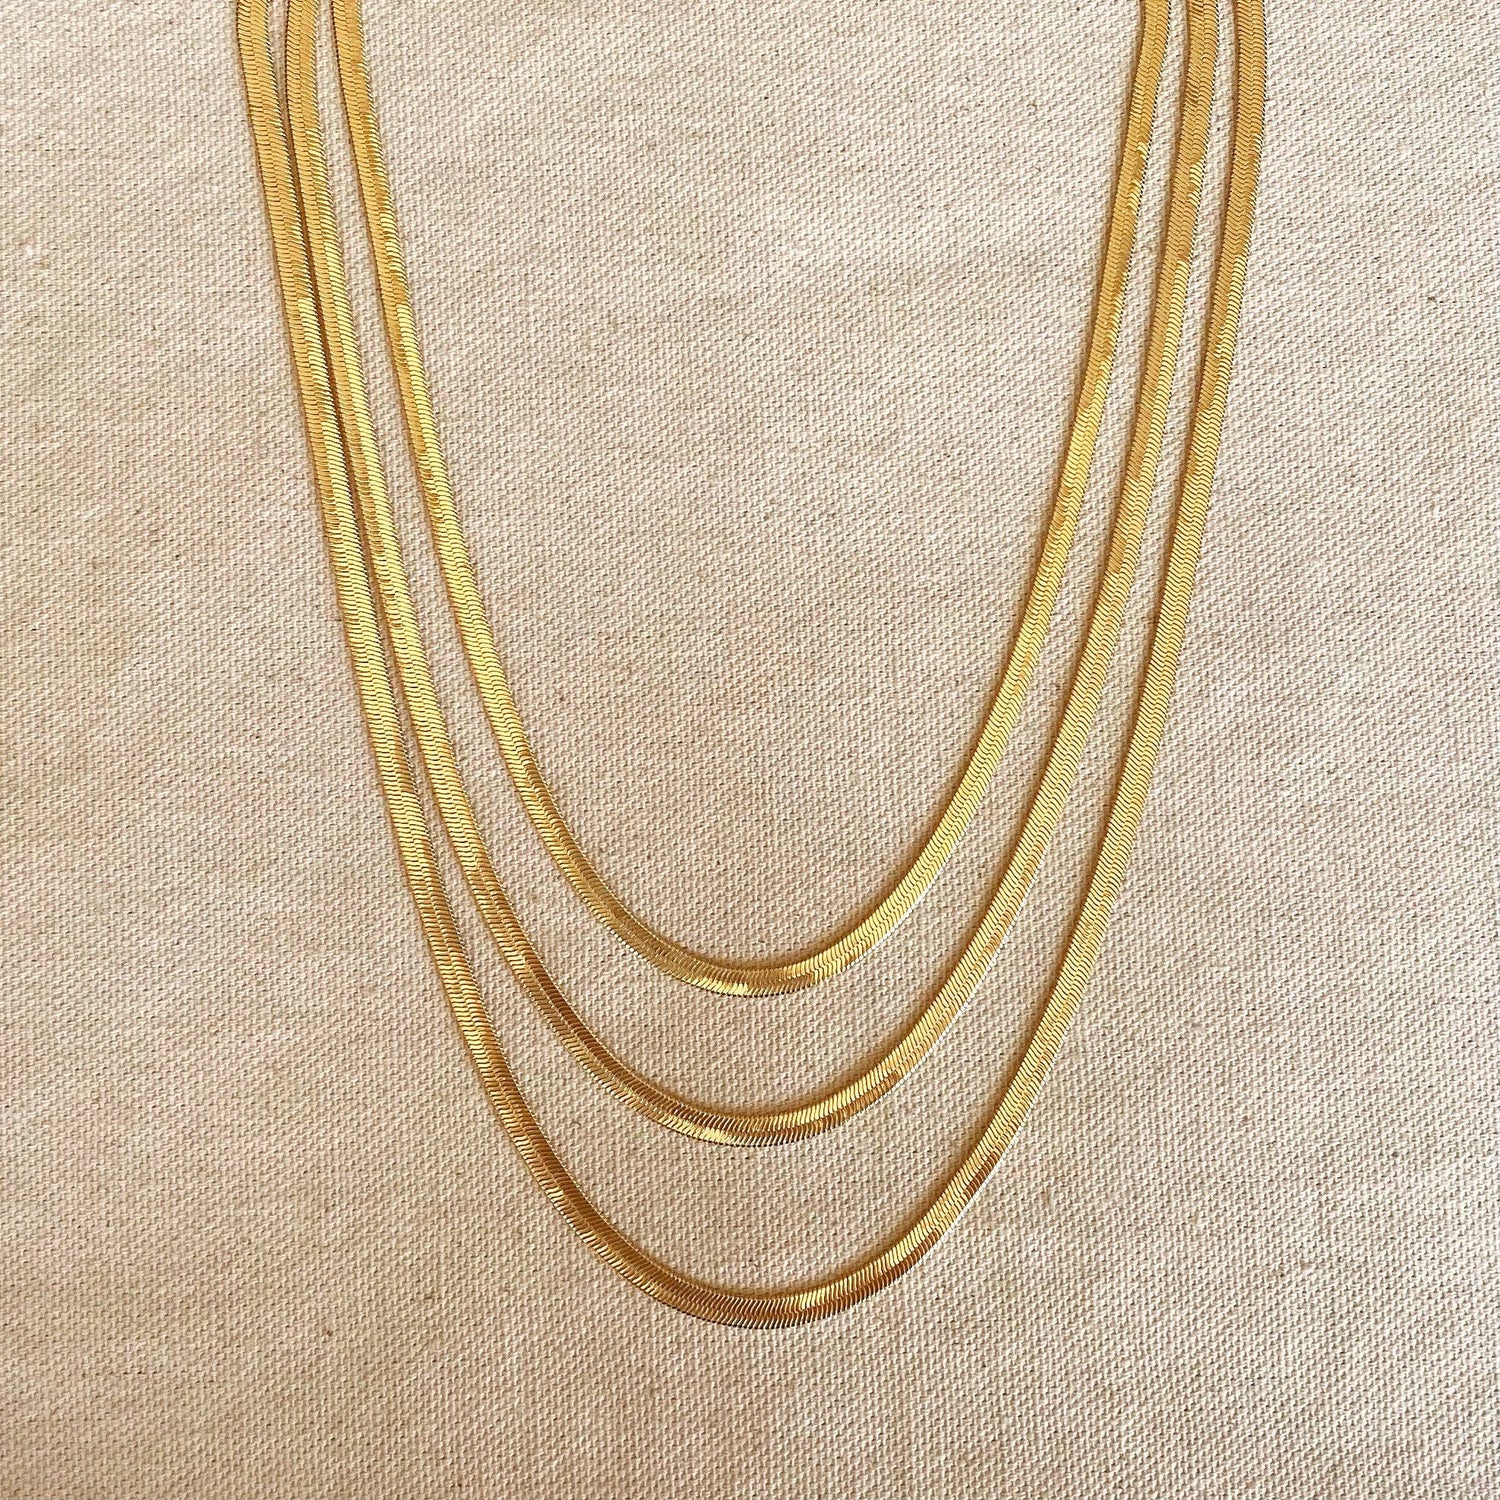 18k Gold Filled Herringbone Chain